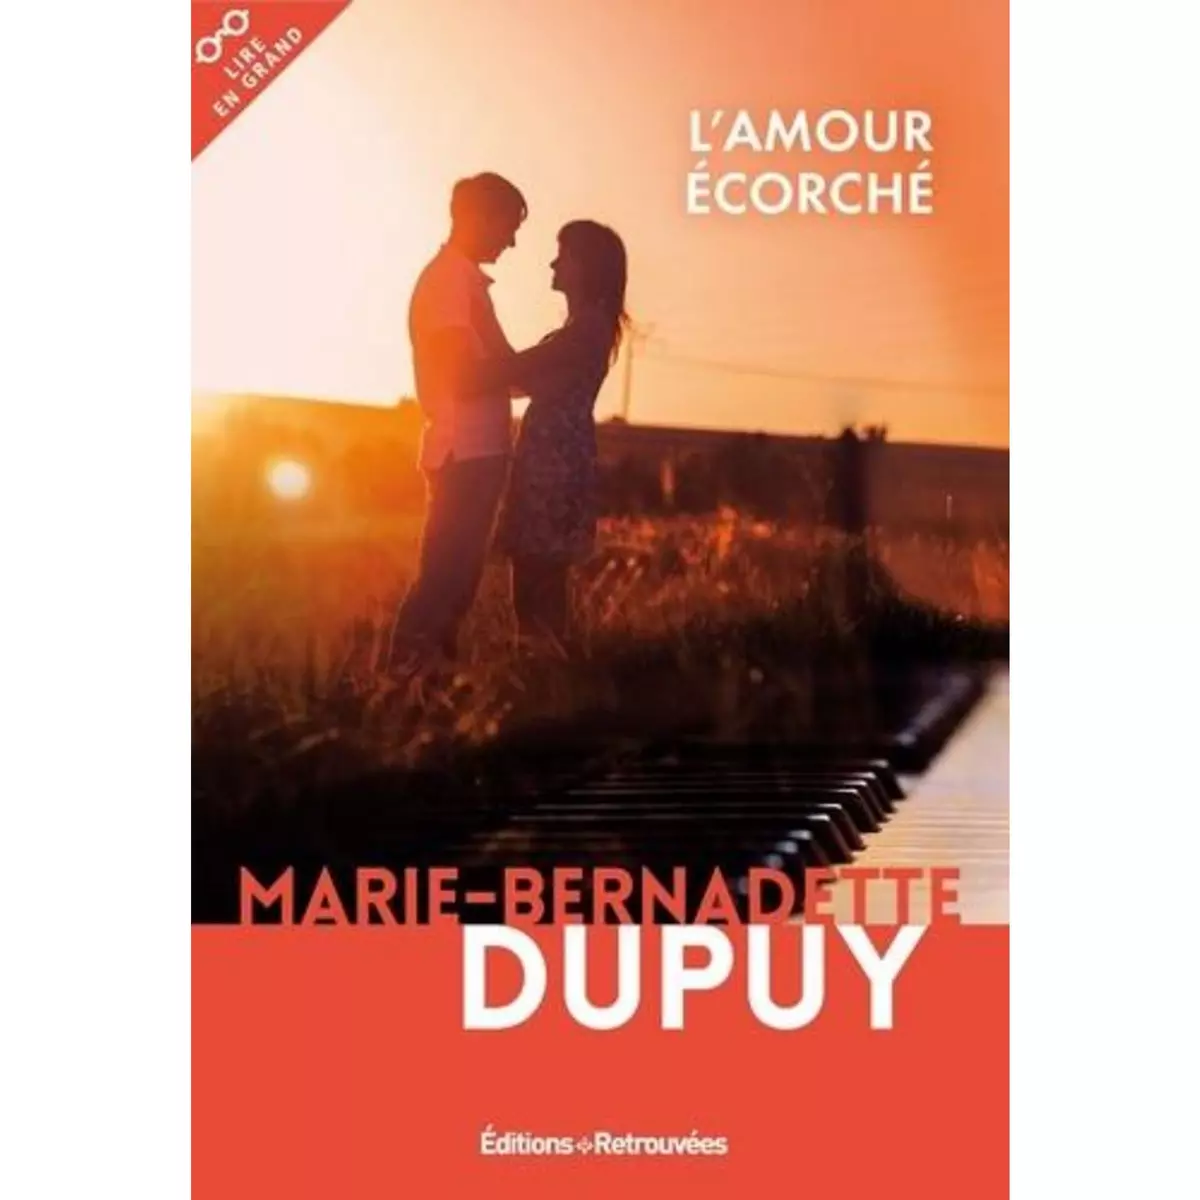  L'AMOUR ECORCHE [EDITION EN GROS CARACTERES], Dupuy Marie-Bernadette